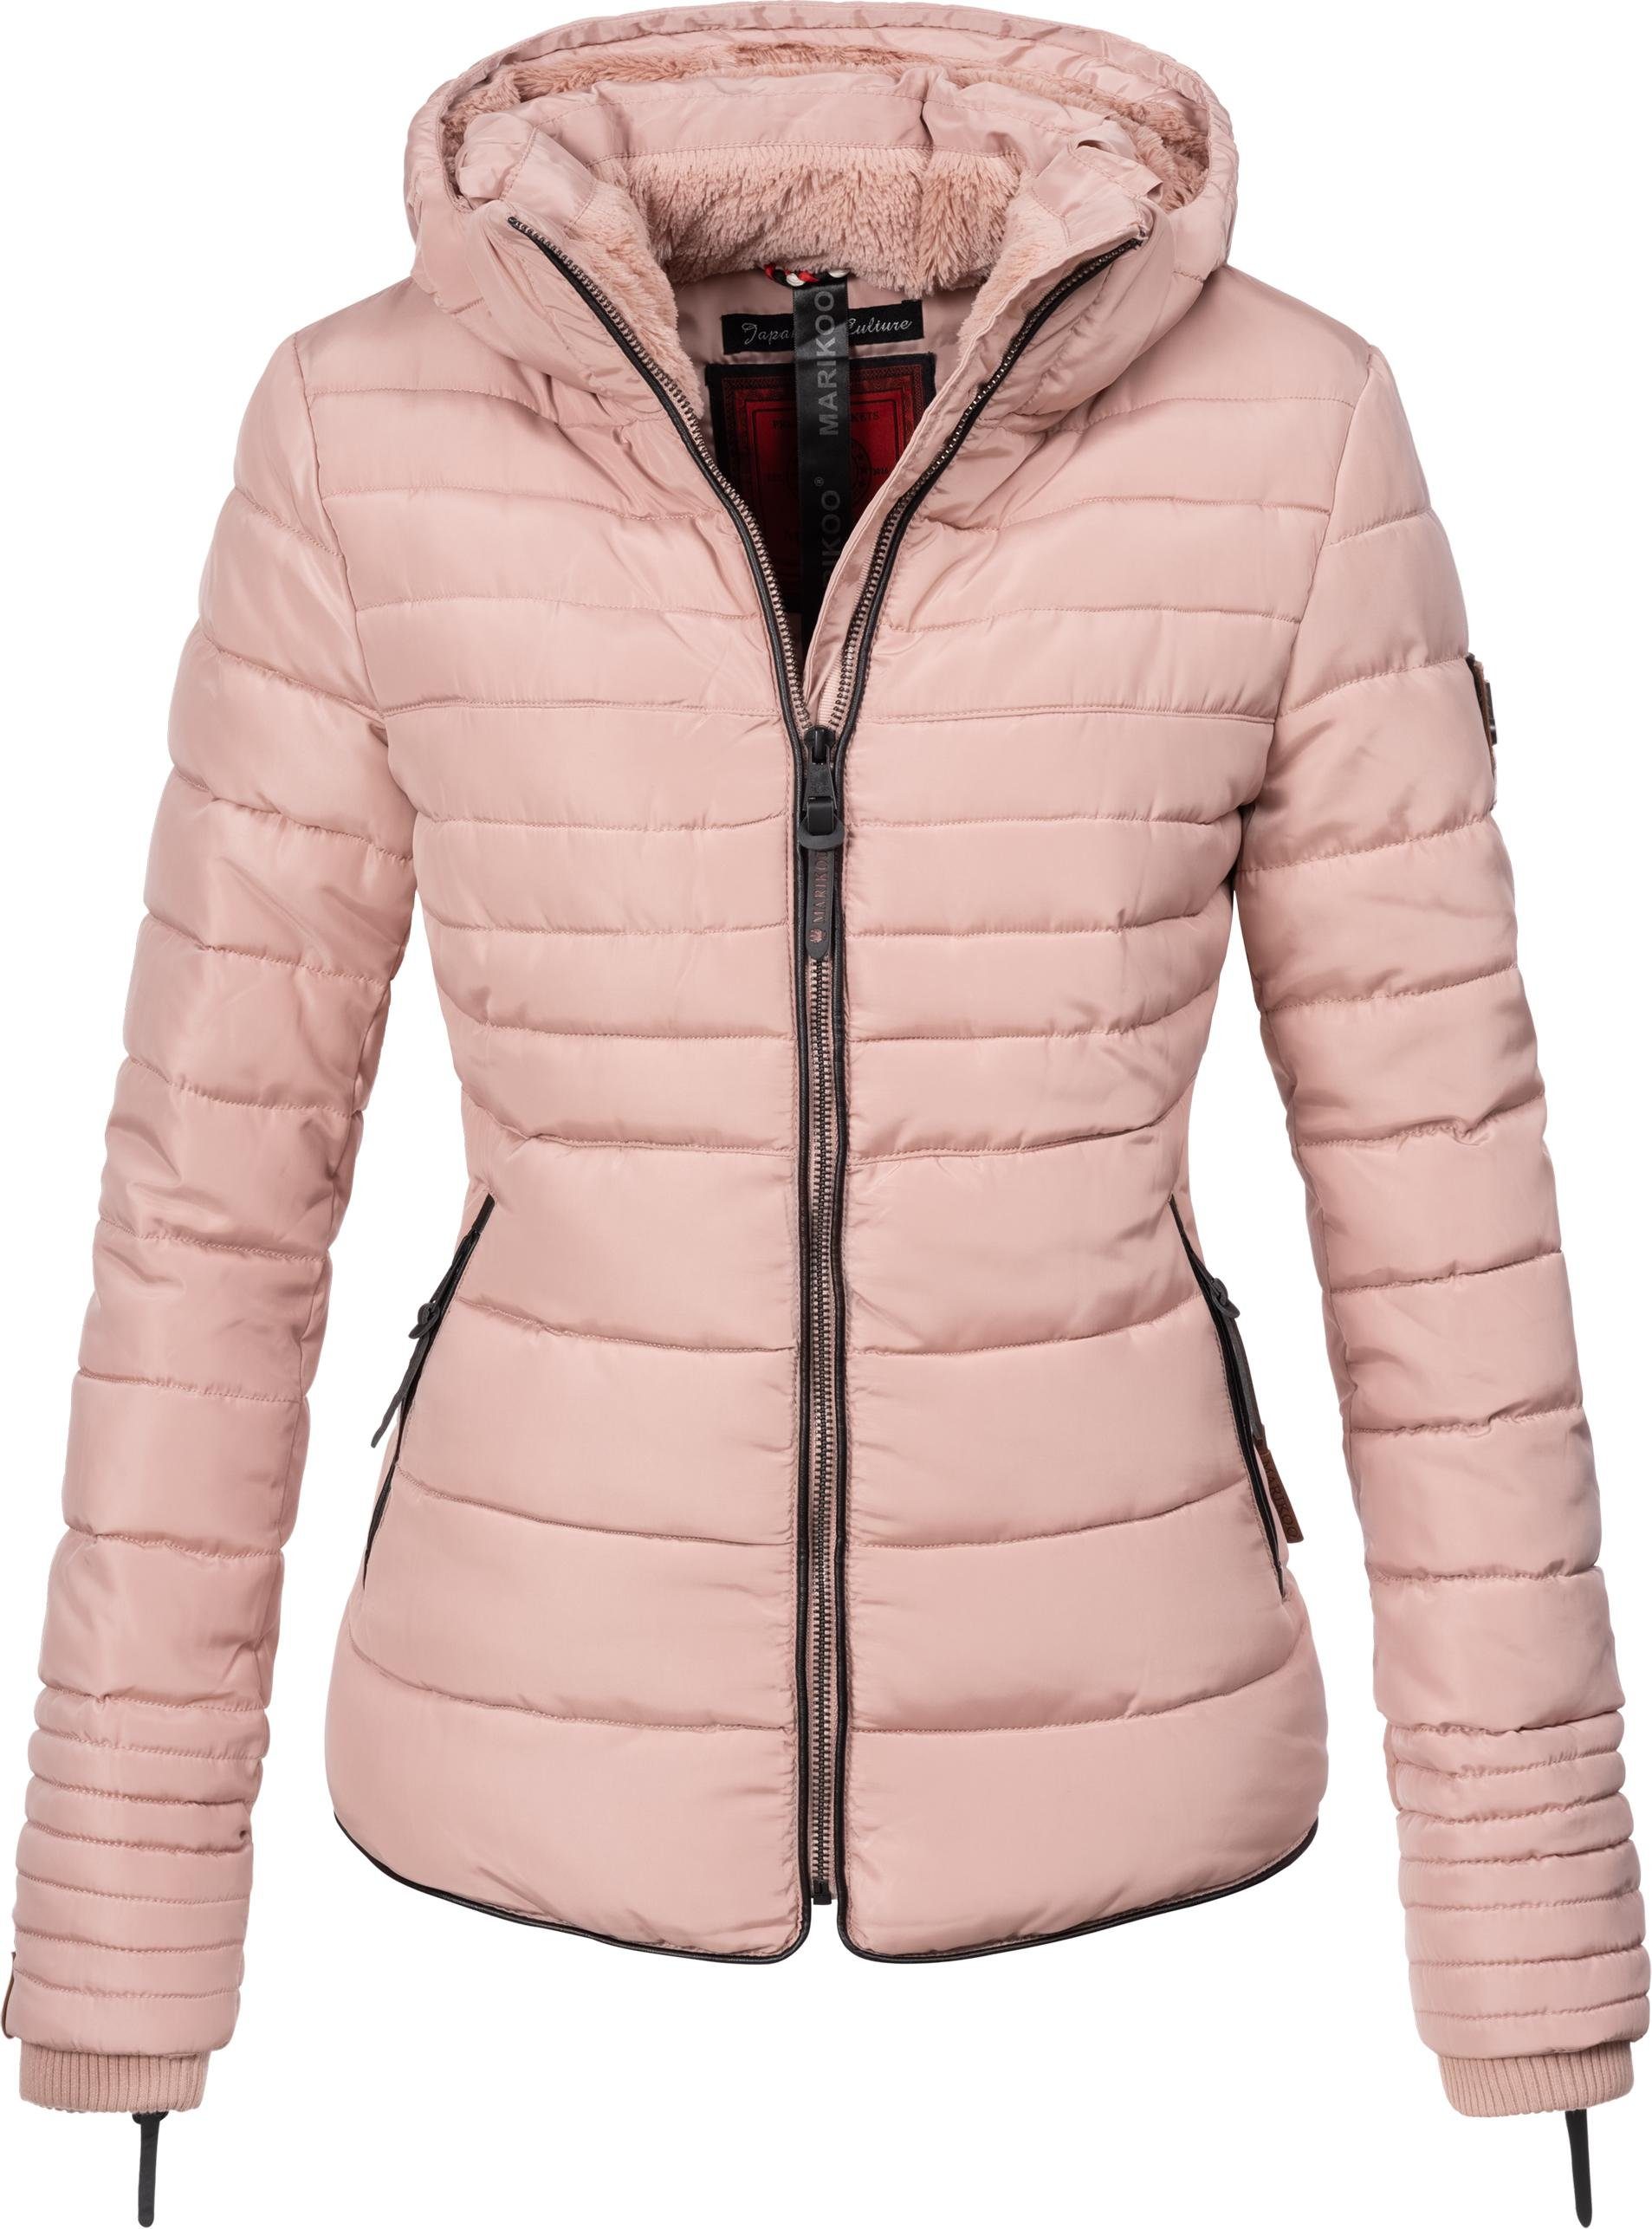 Rosa Winterjacken für Damen kaufen » Pinke Winterjacken | OTTO